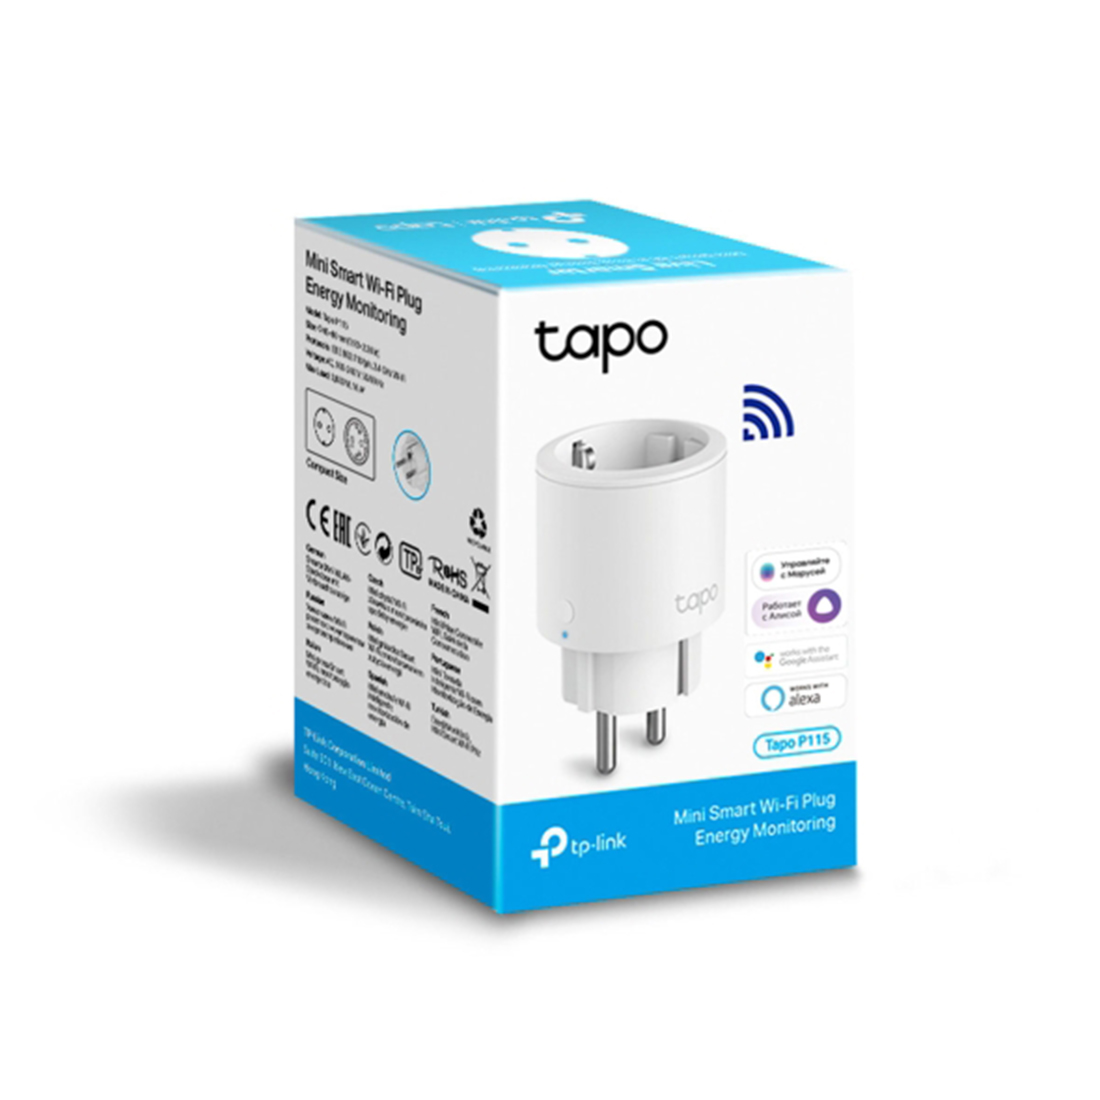 Умная мини Wi-Fi розетка TP-Link Tapo P115